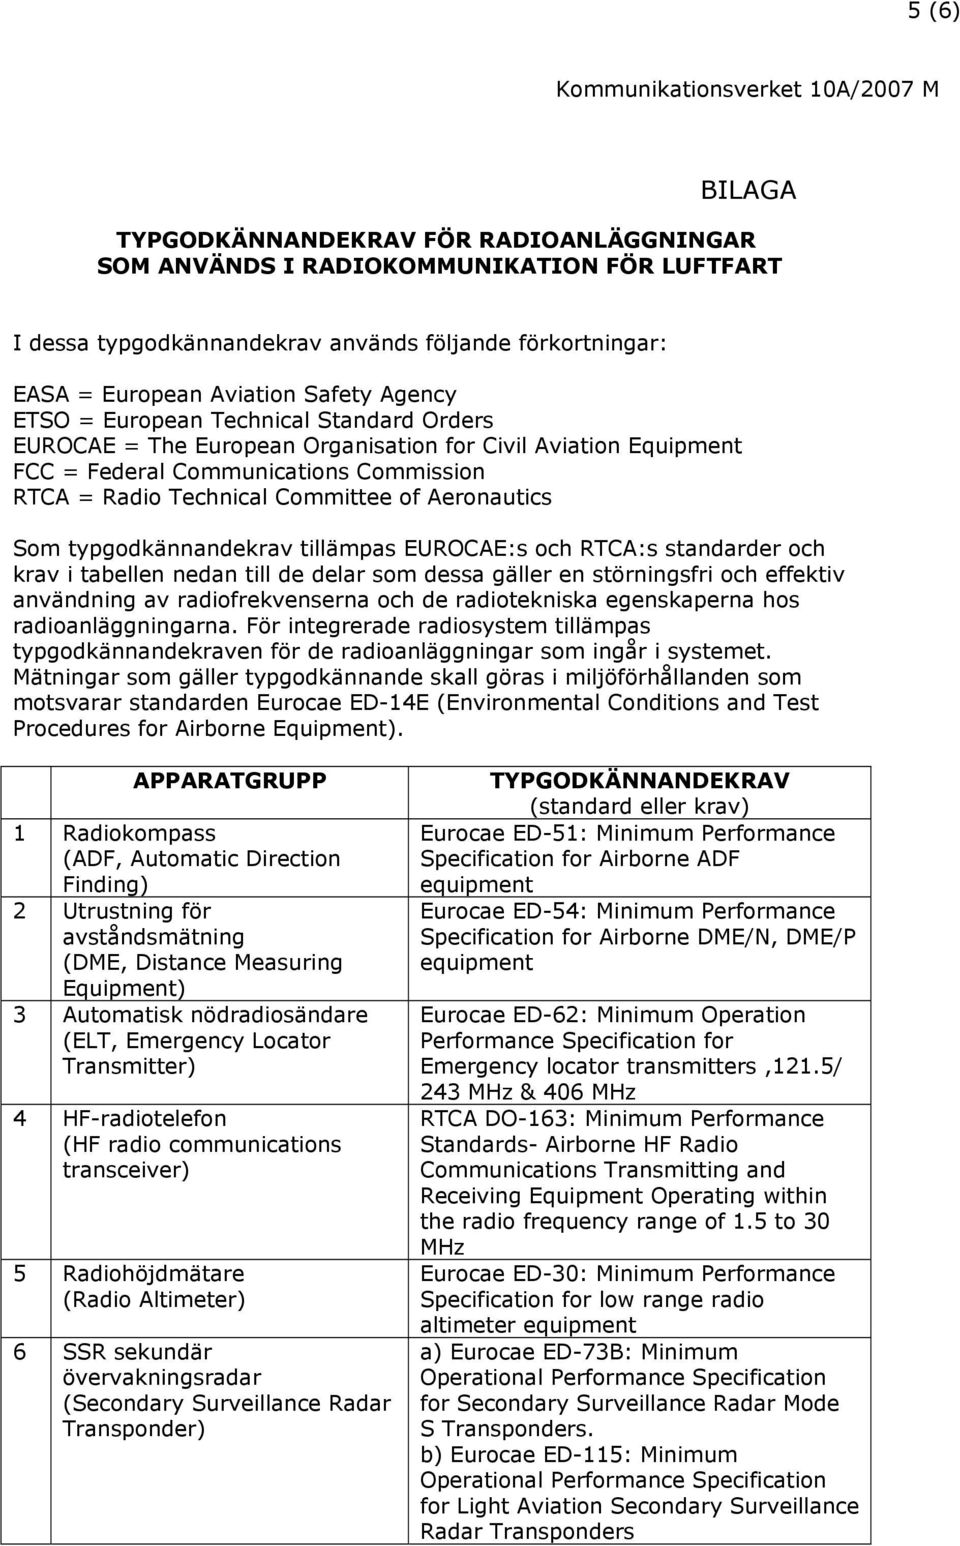 typgodkännandekrav tillämpas EUROCAE:s och RTCA:s standarder och krav i tabellen nedan till de delar som dessa gäller en störningsfri och effektiv användning av radiofrekvenserna och de radiotekniska